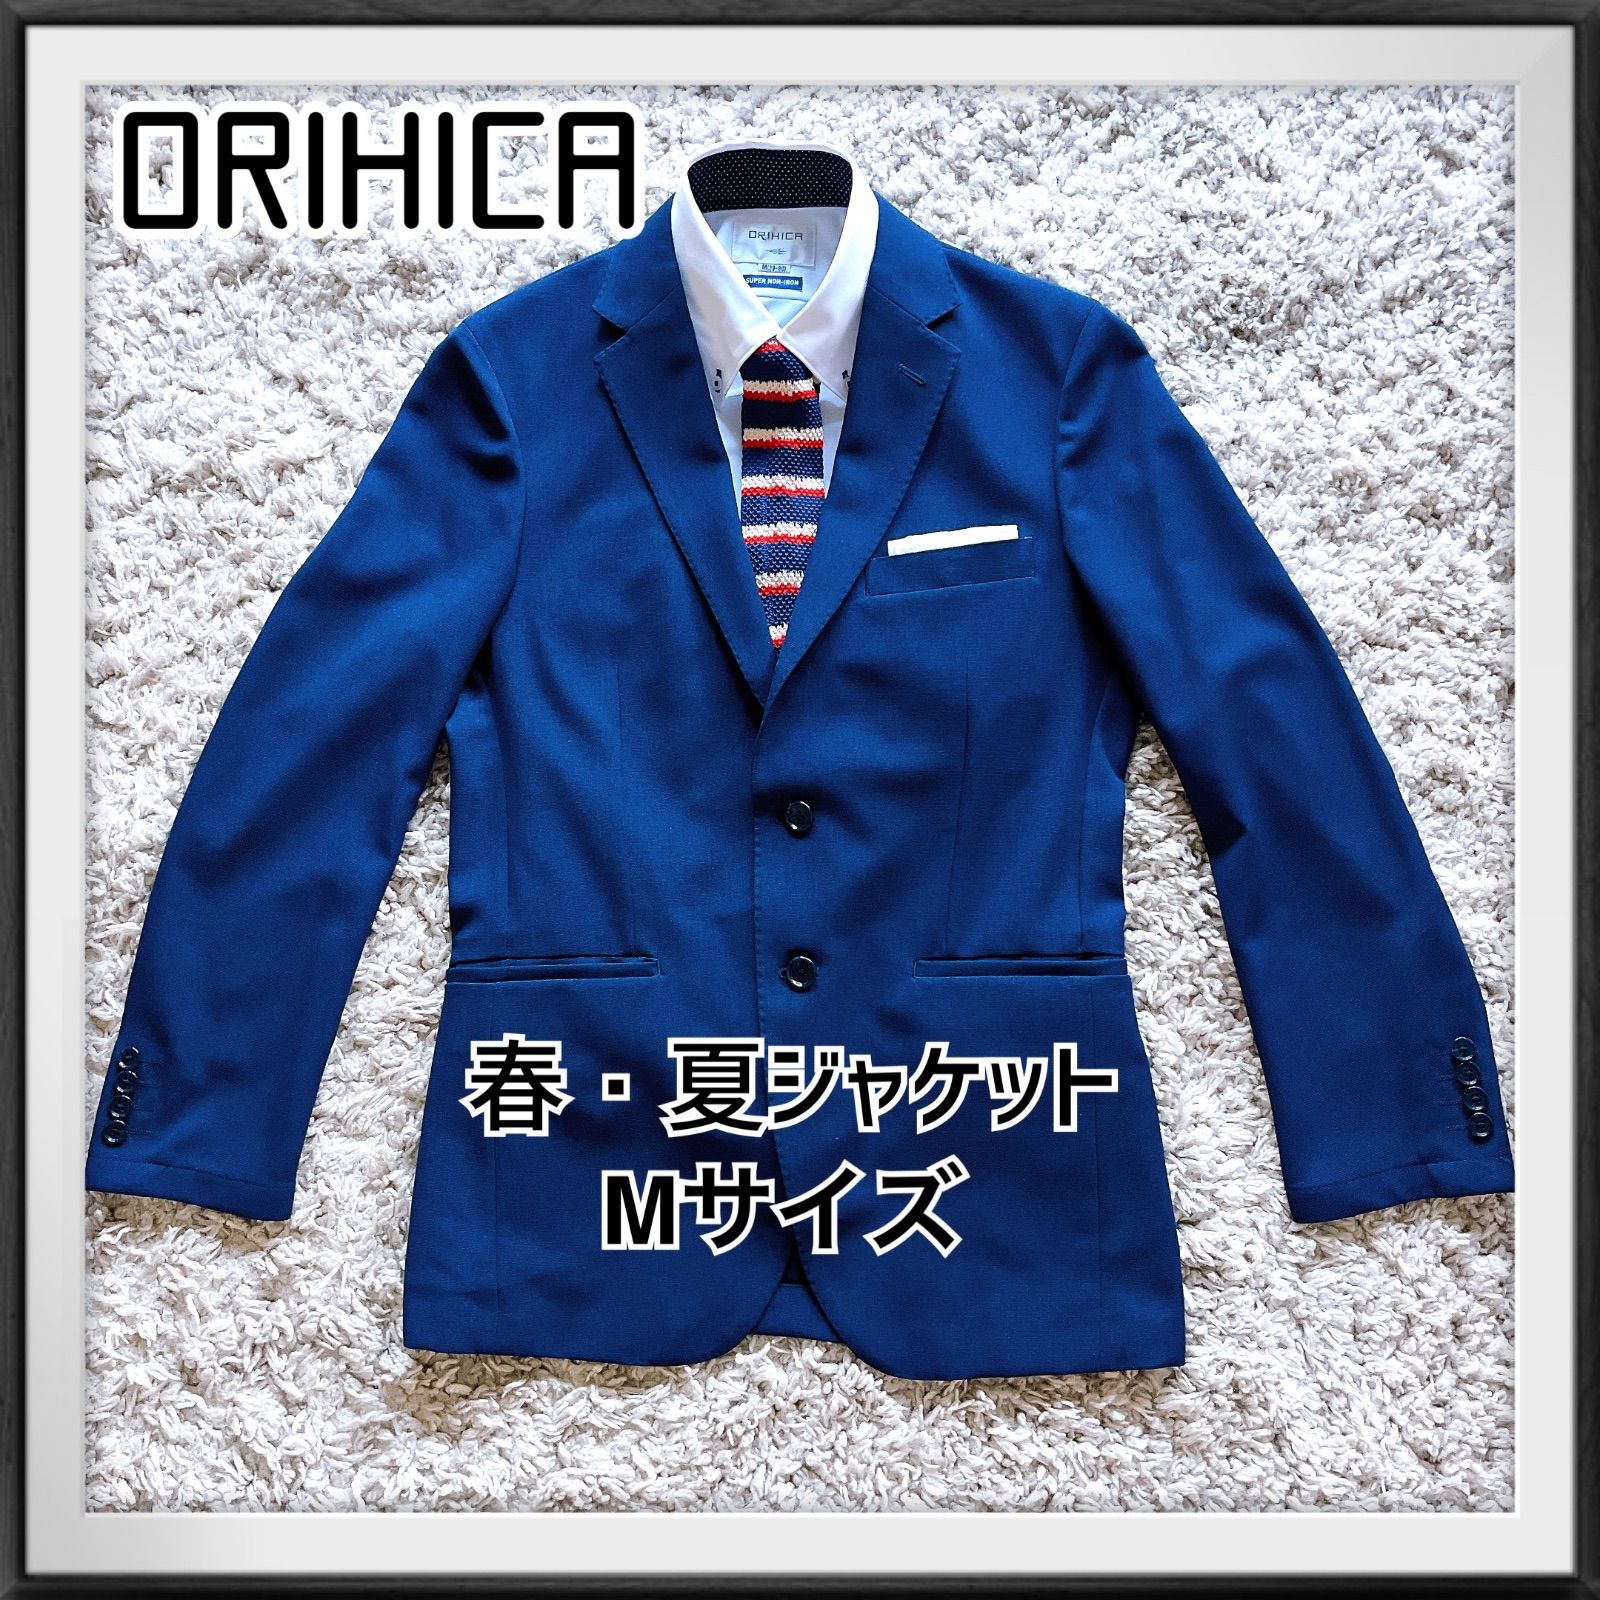 変革のパワーを授ける・願望成就 【ORIHICA】オリヒカ 夏物ジャケット